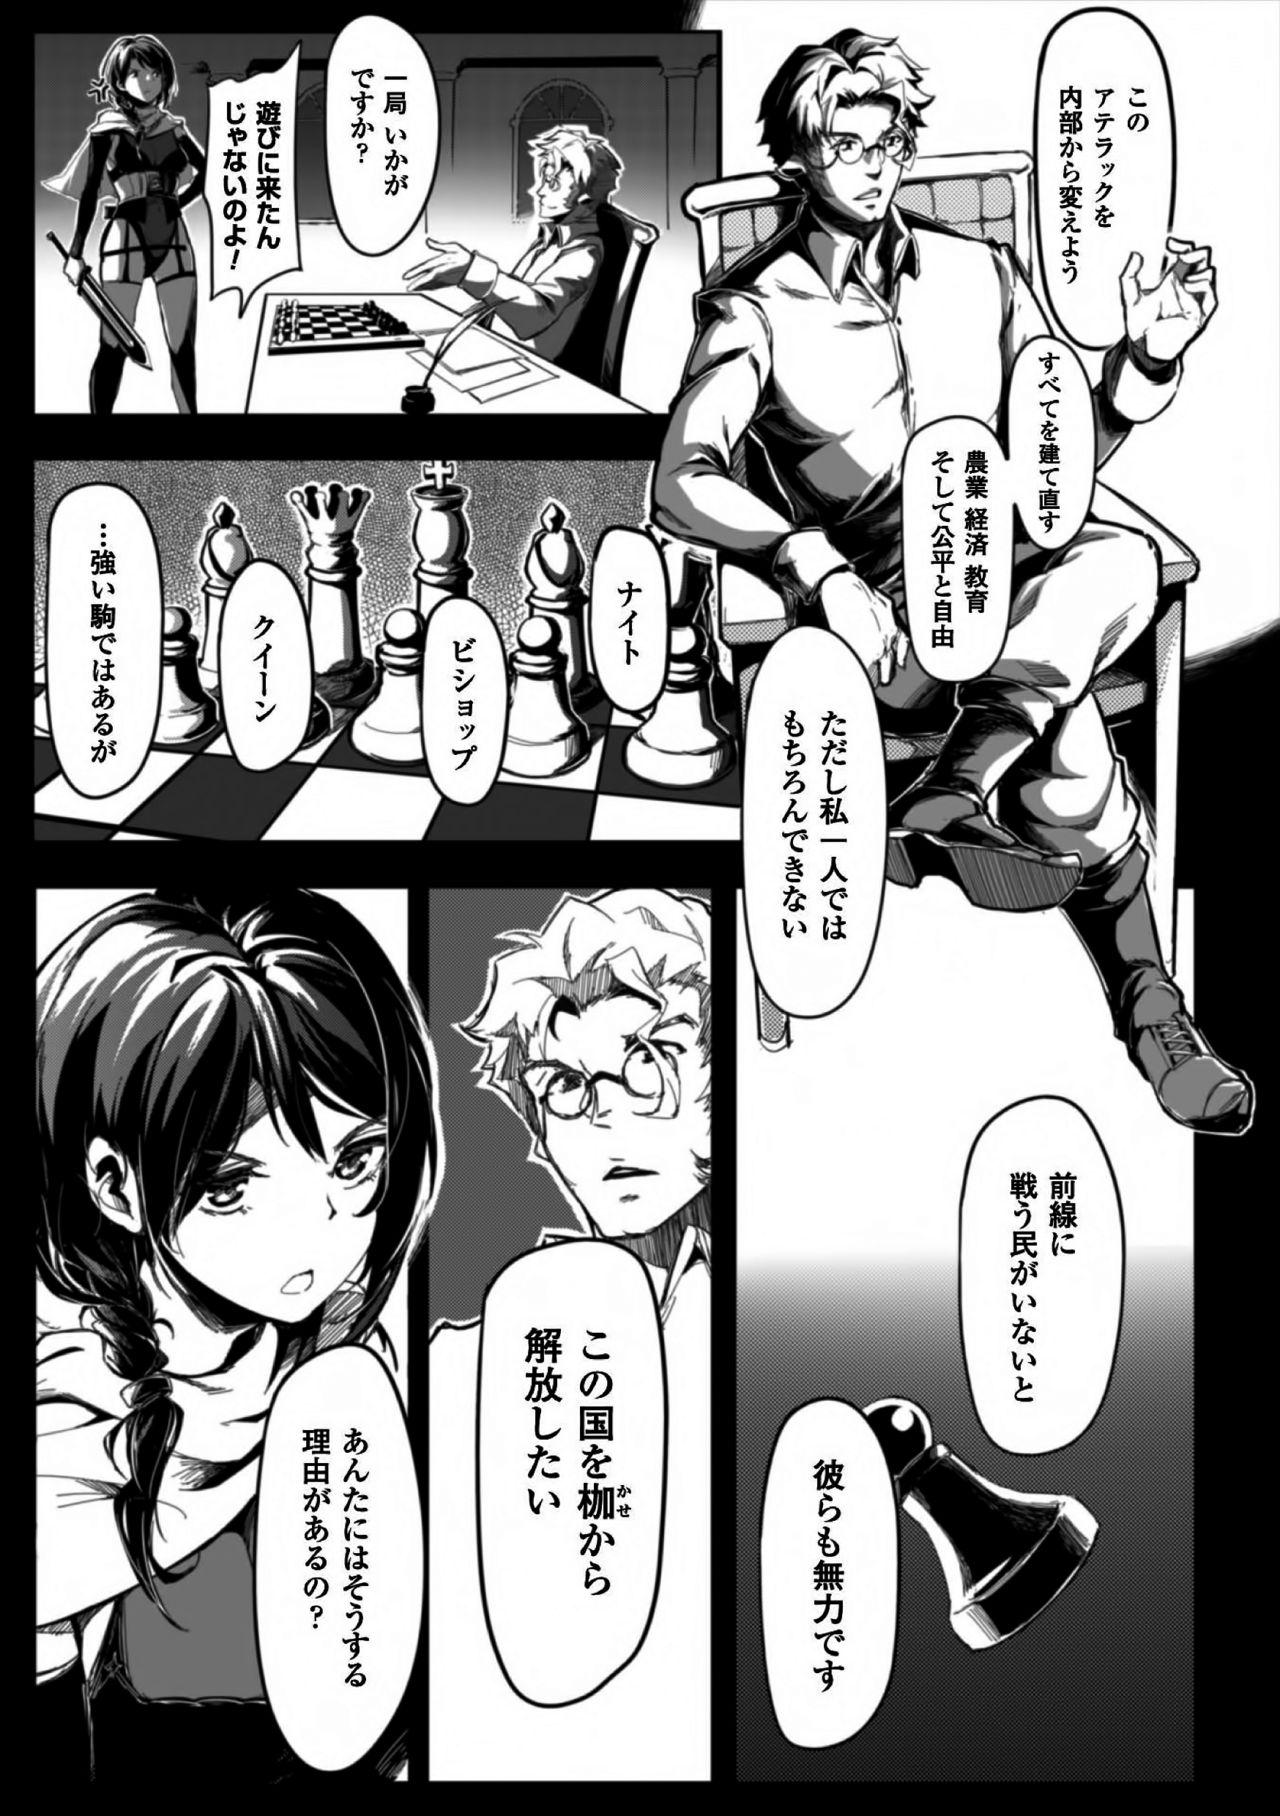 Cartoon Seijo no Kyusai Episode2 Anya no Seijo Ruiva - Page 11